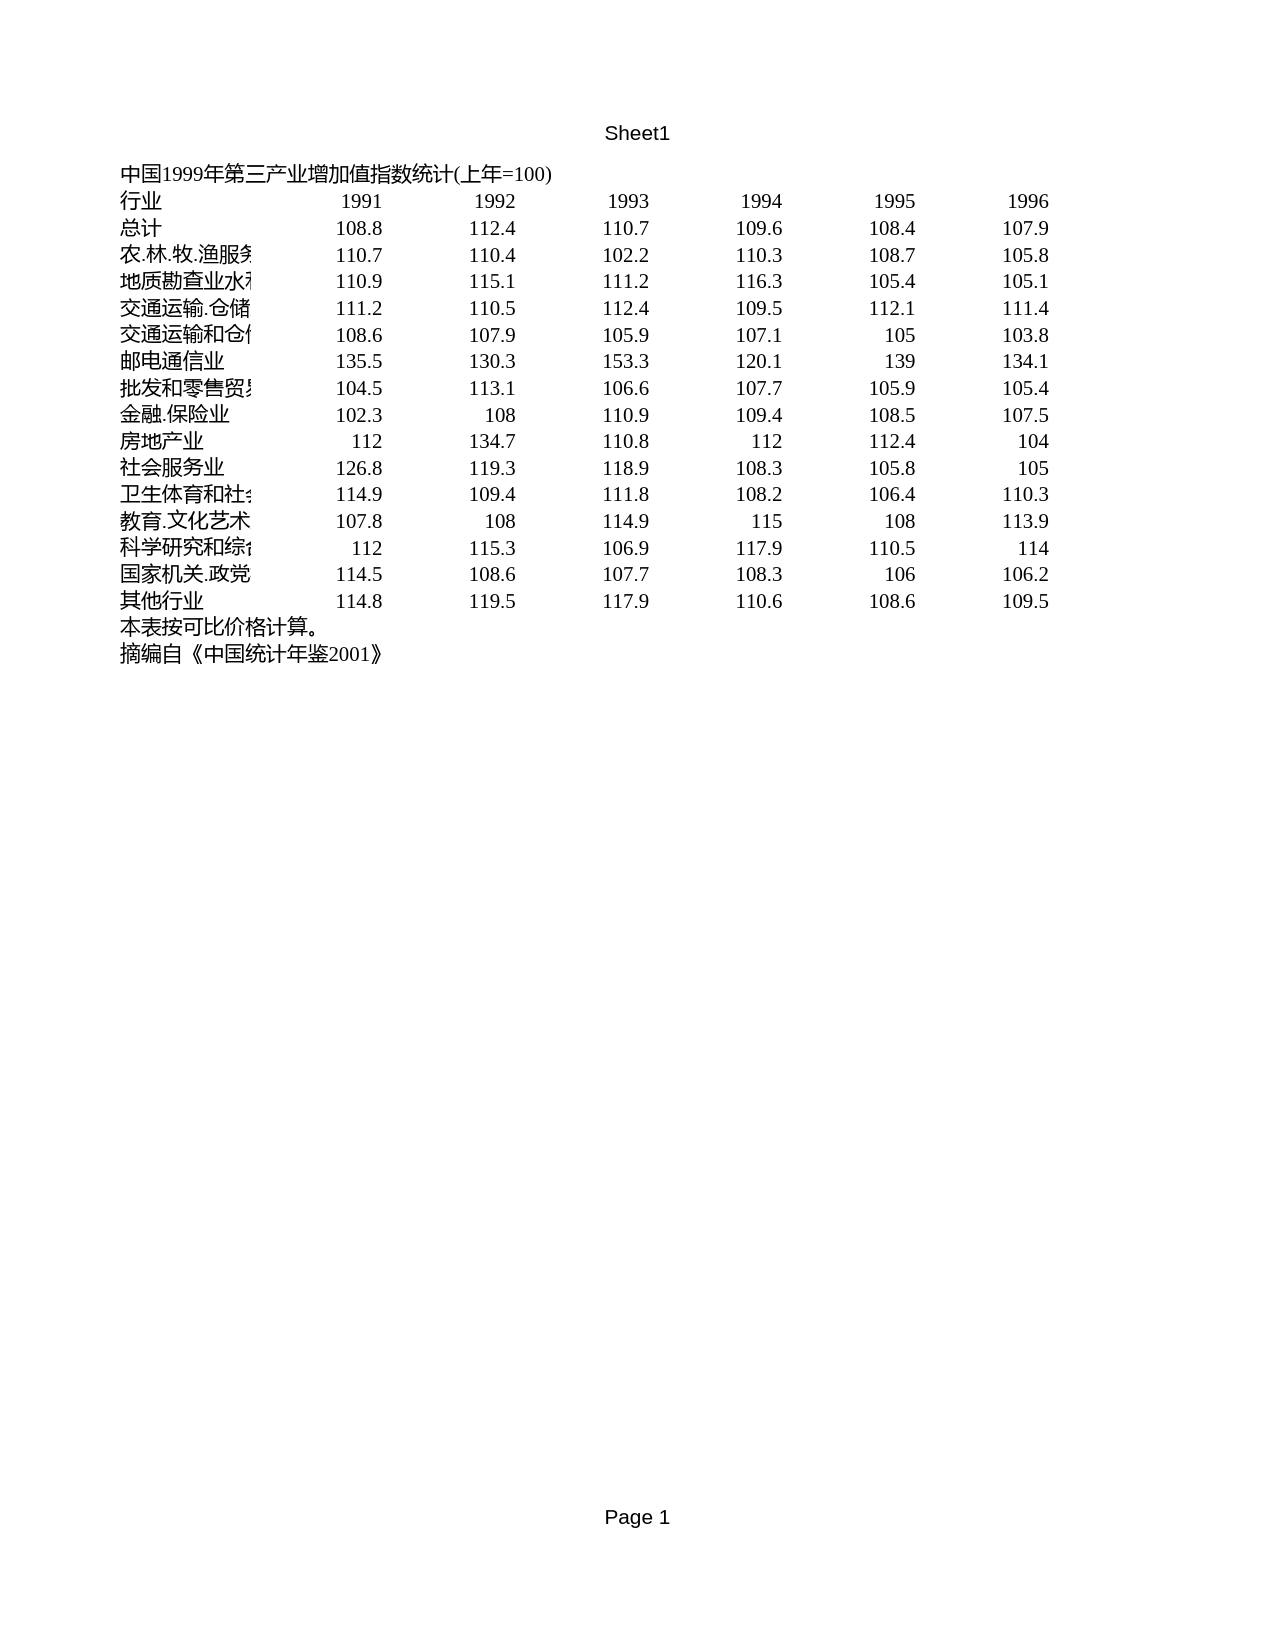 中国统计年鉴2001 中国1999年第三产业增加值指数统计(上年=100) - 数据